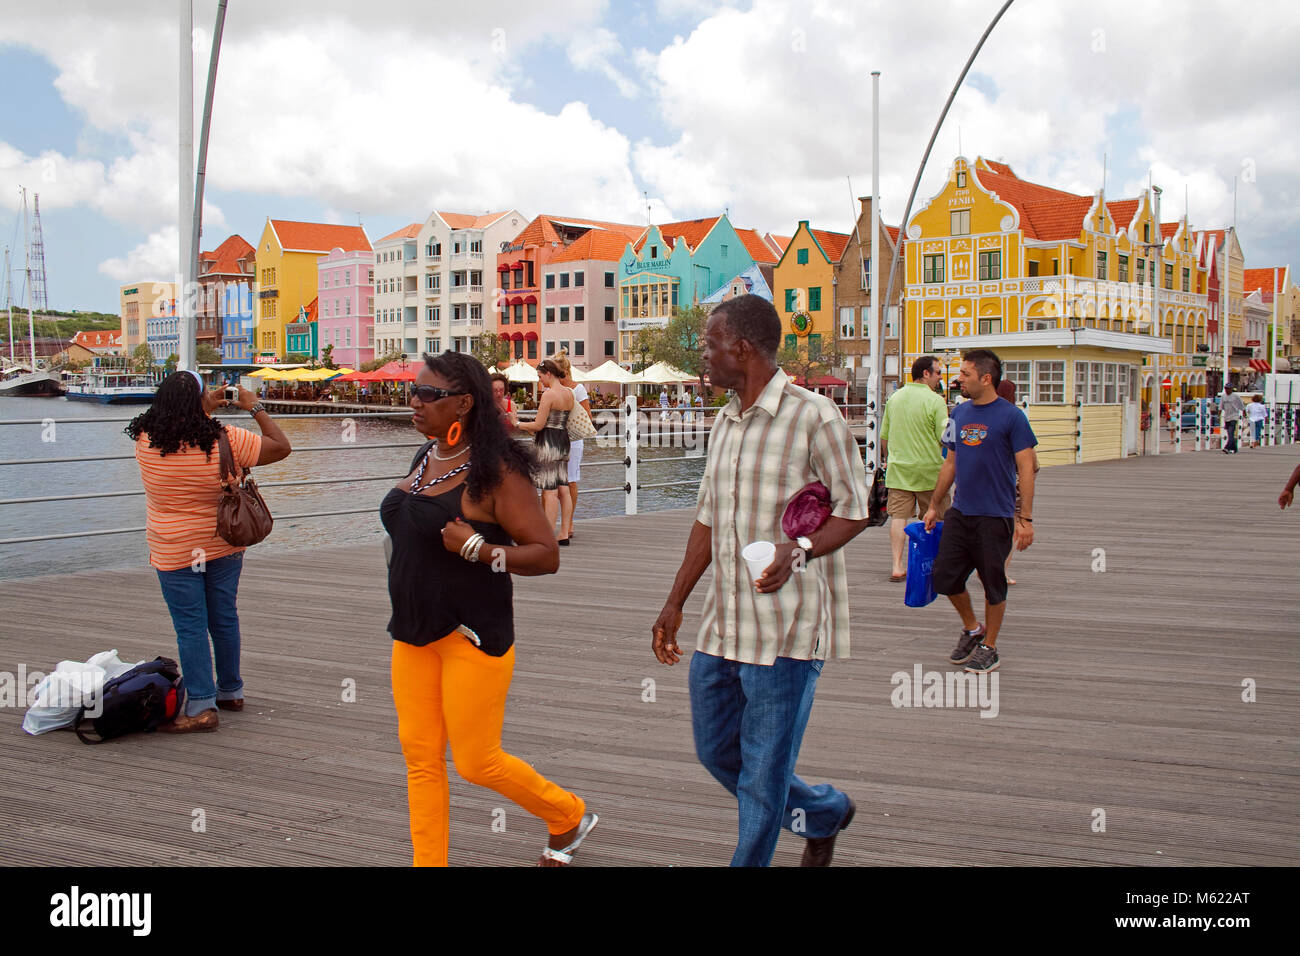 Les gens sur Queen Emma bridge, derrière l'arcade commerciale, rangée de maisons colorées, Willemstad, Curaçao, Antilles, Caraïbes, mer des Caraïbes Banque D'Images